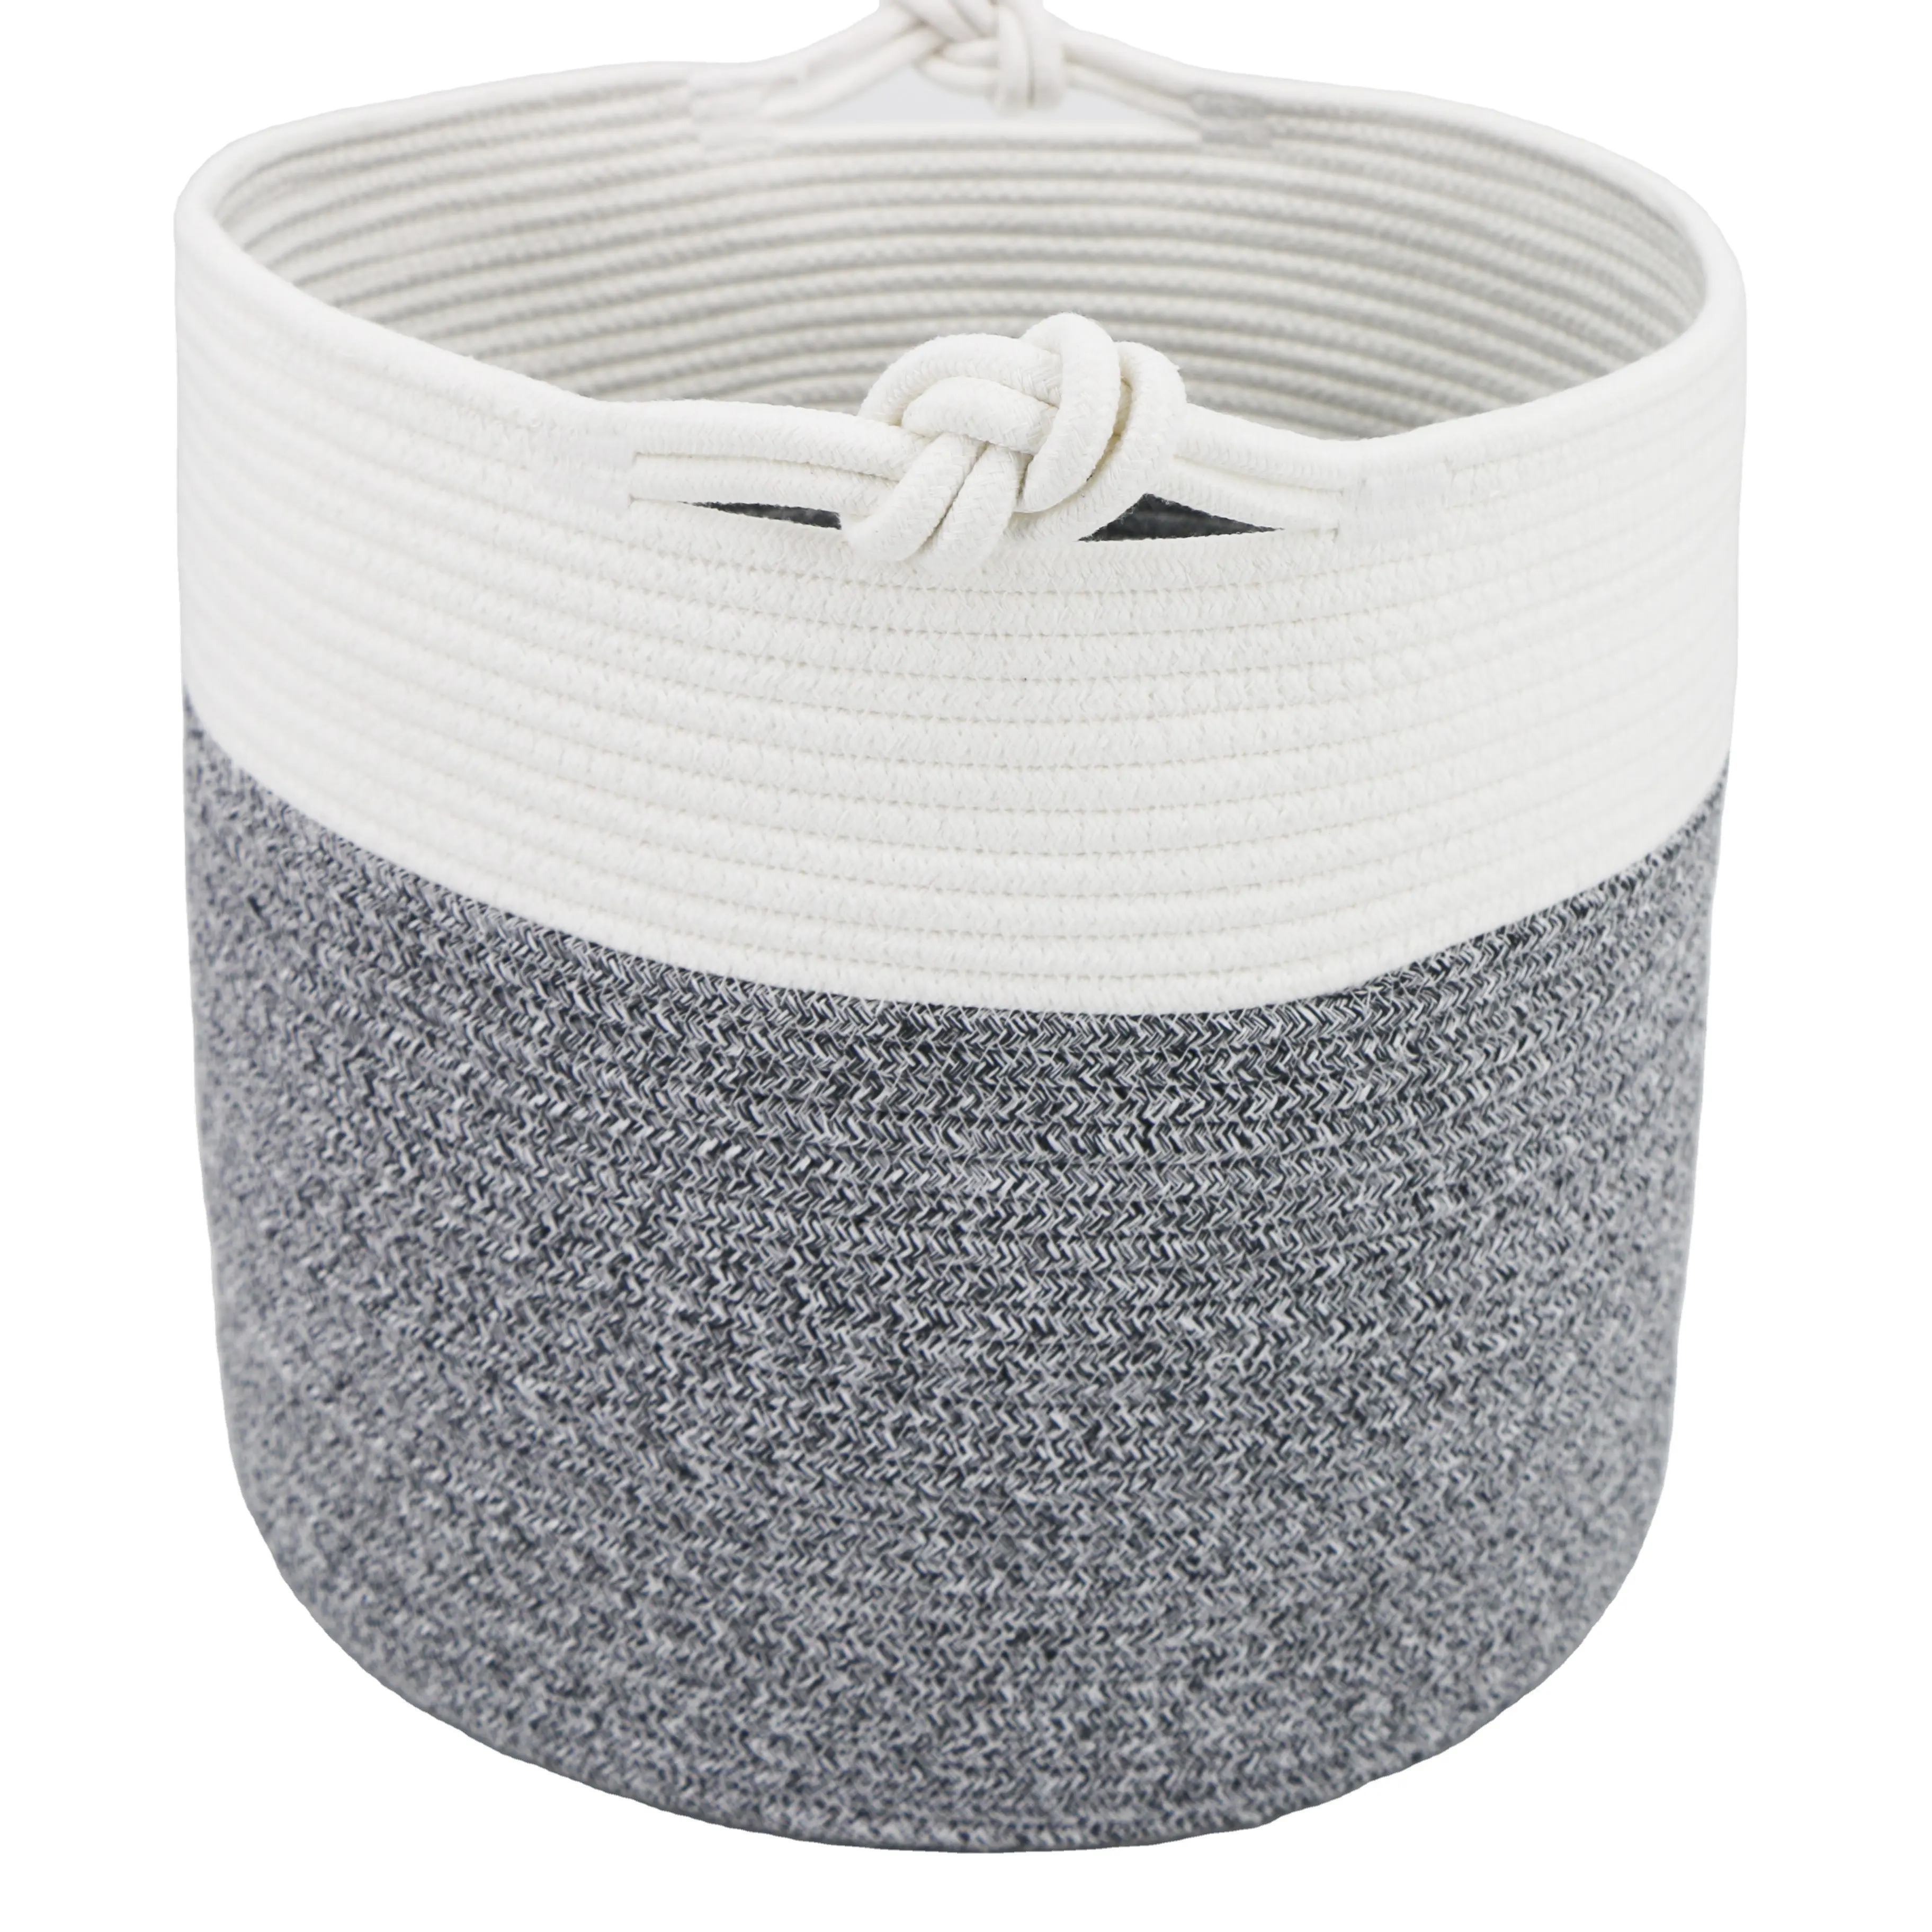 Vendita calda cesto cesto di cesto di peluche personalizzato nuovo Design 15x14.2 pollici tessuto in corda di cotone cesto di stoccaggio